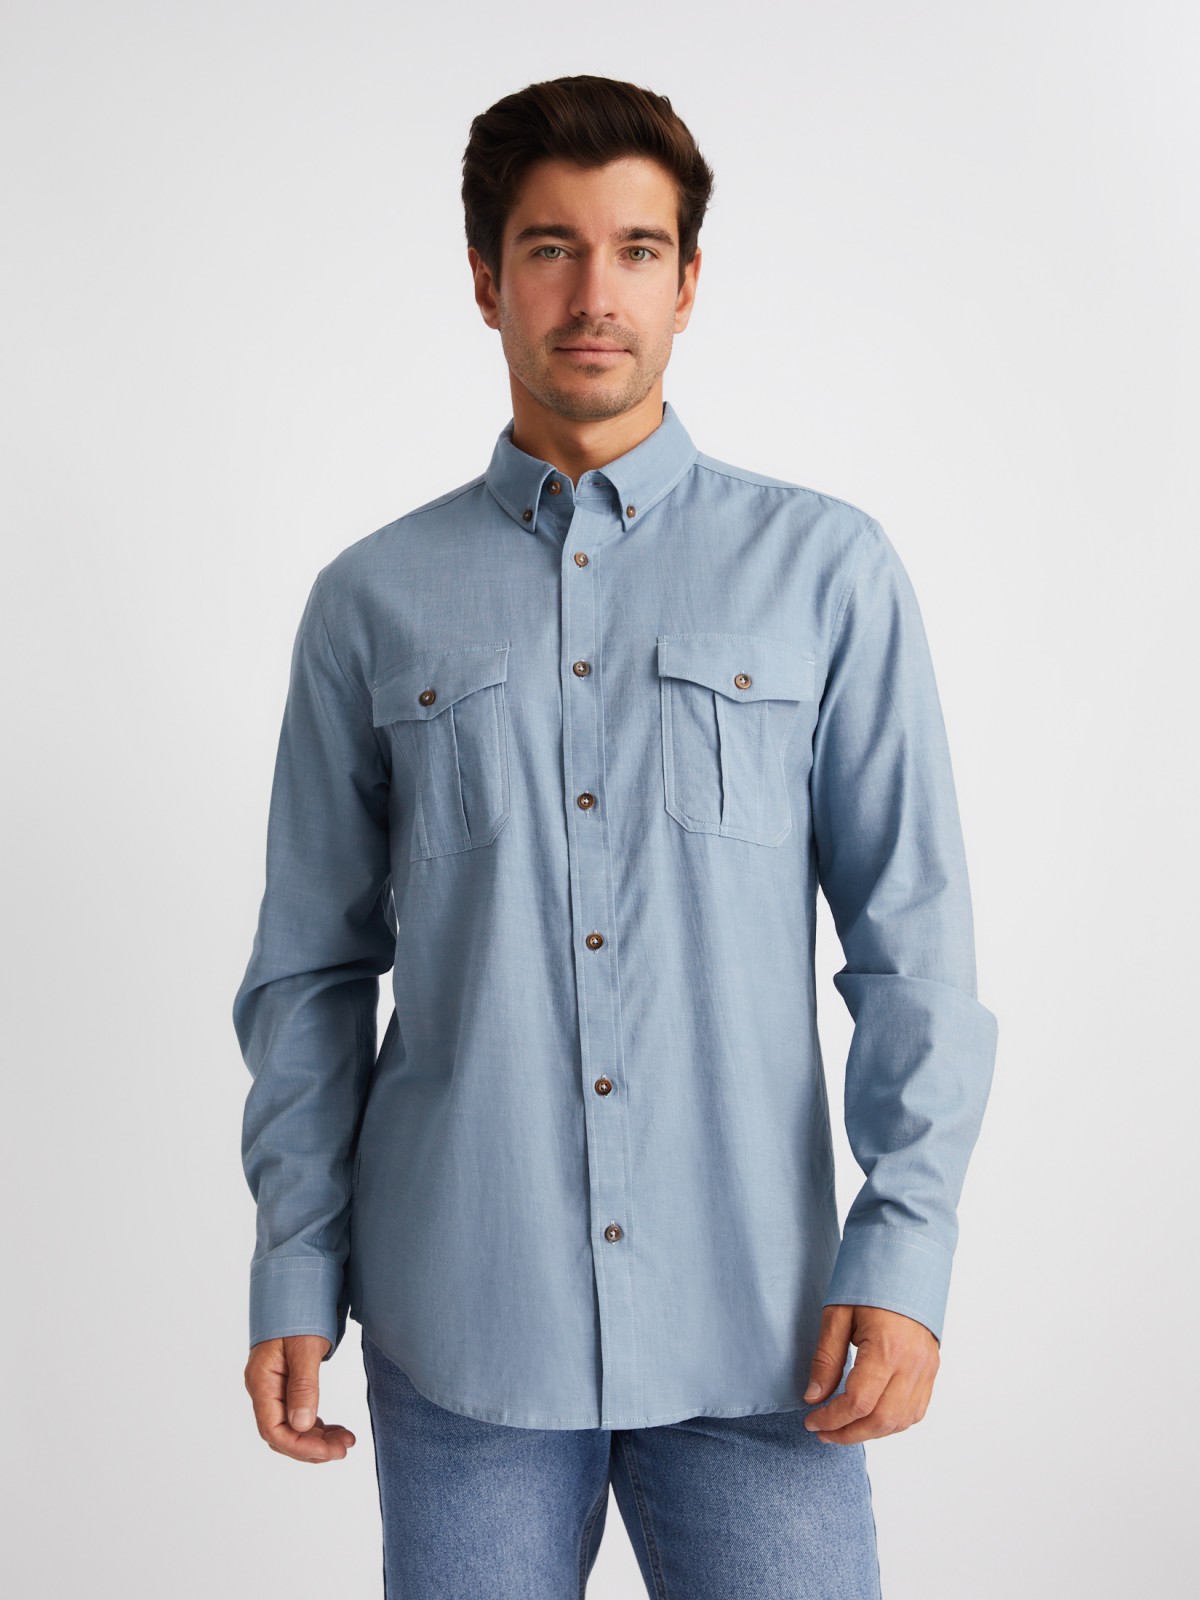 Рубашка из хлопка с длинным рукавом и карманами zolla 01413214R033, цвет светло-голубой, размер M - фото 3